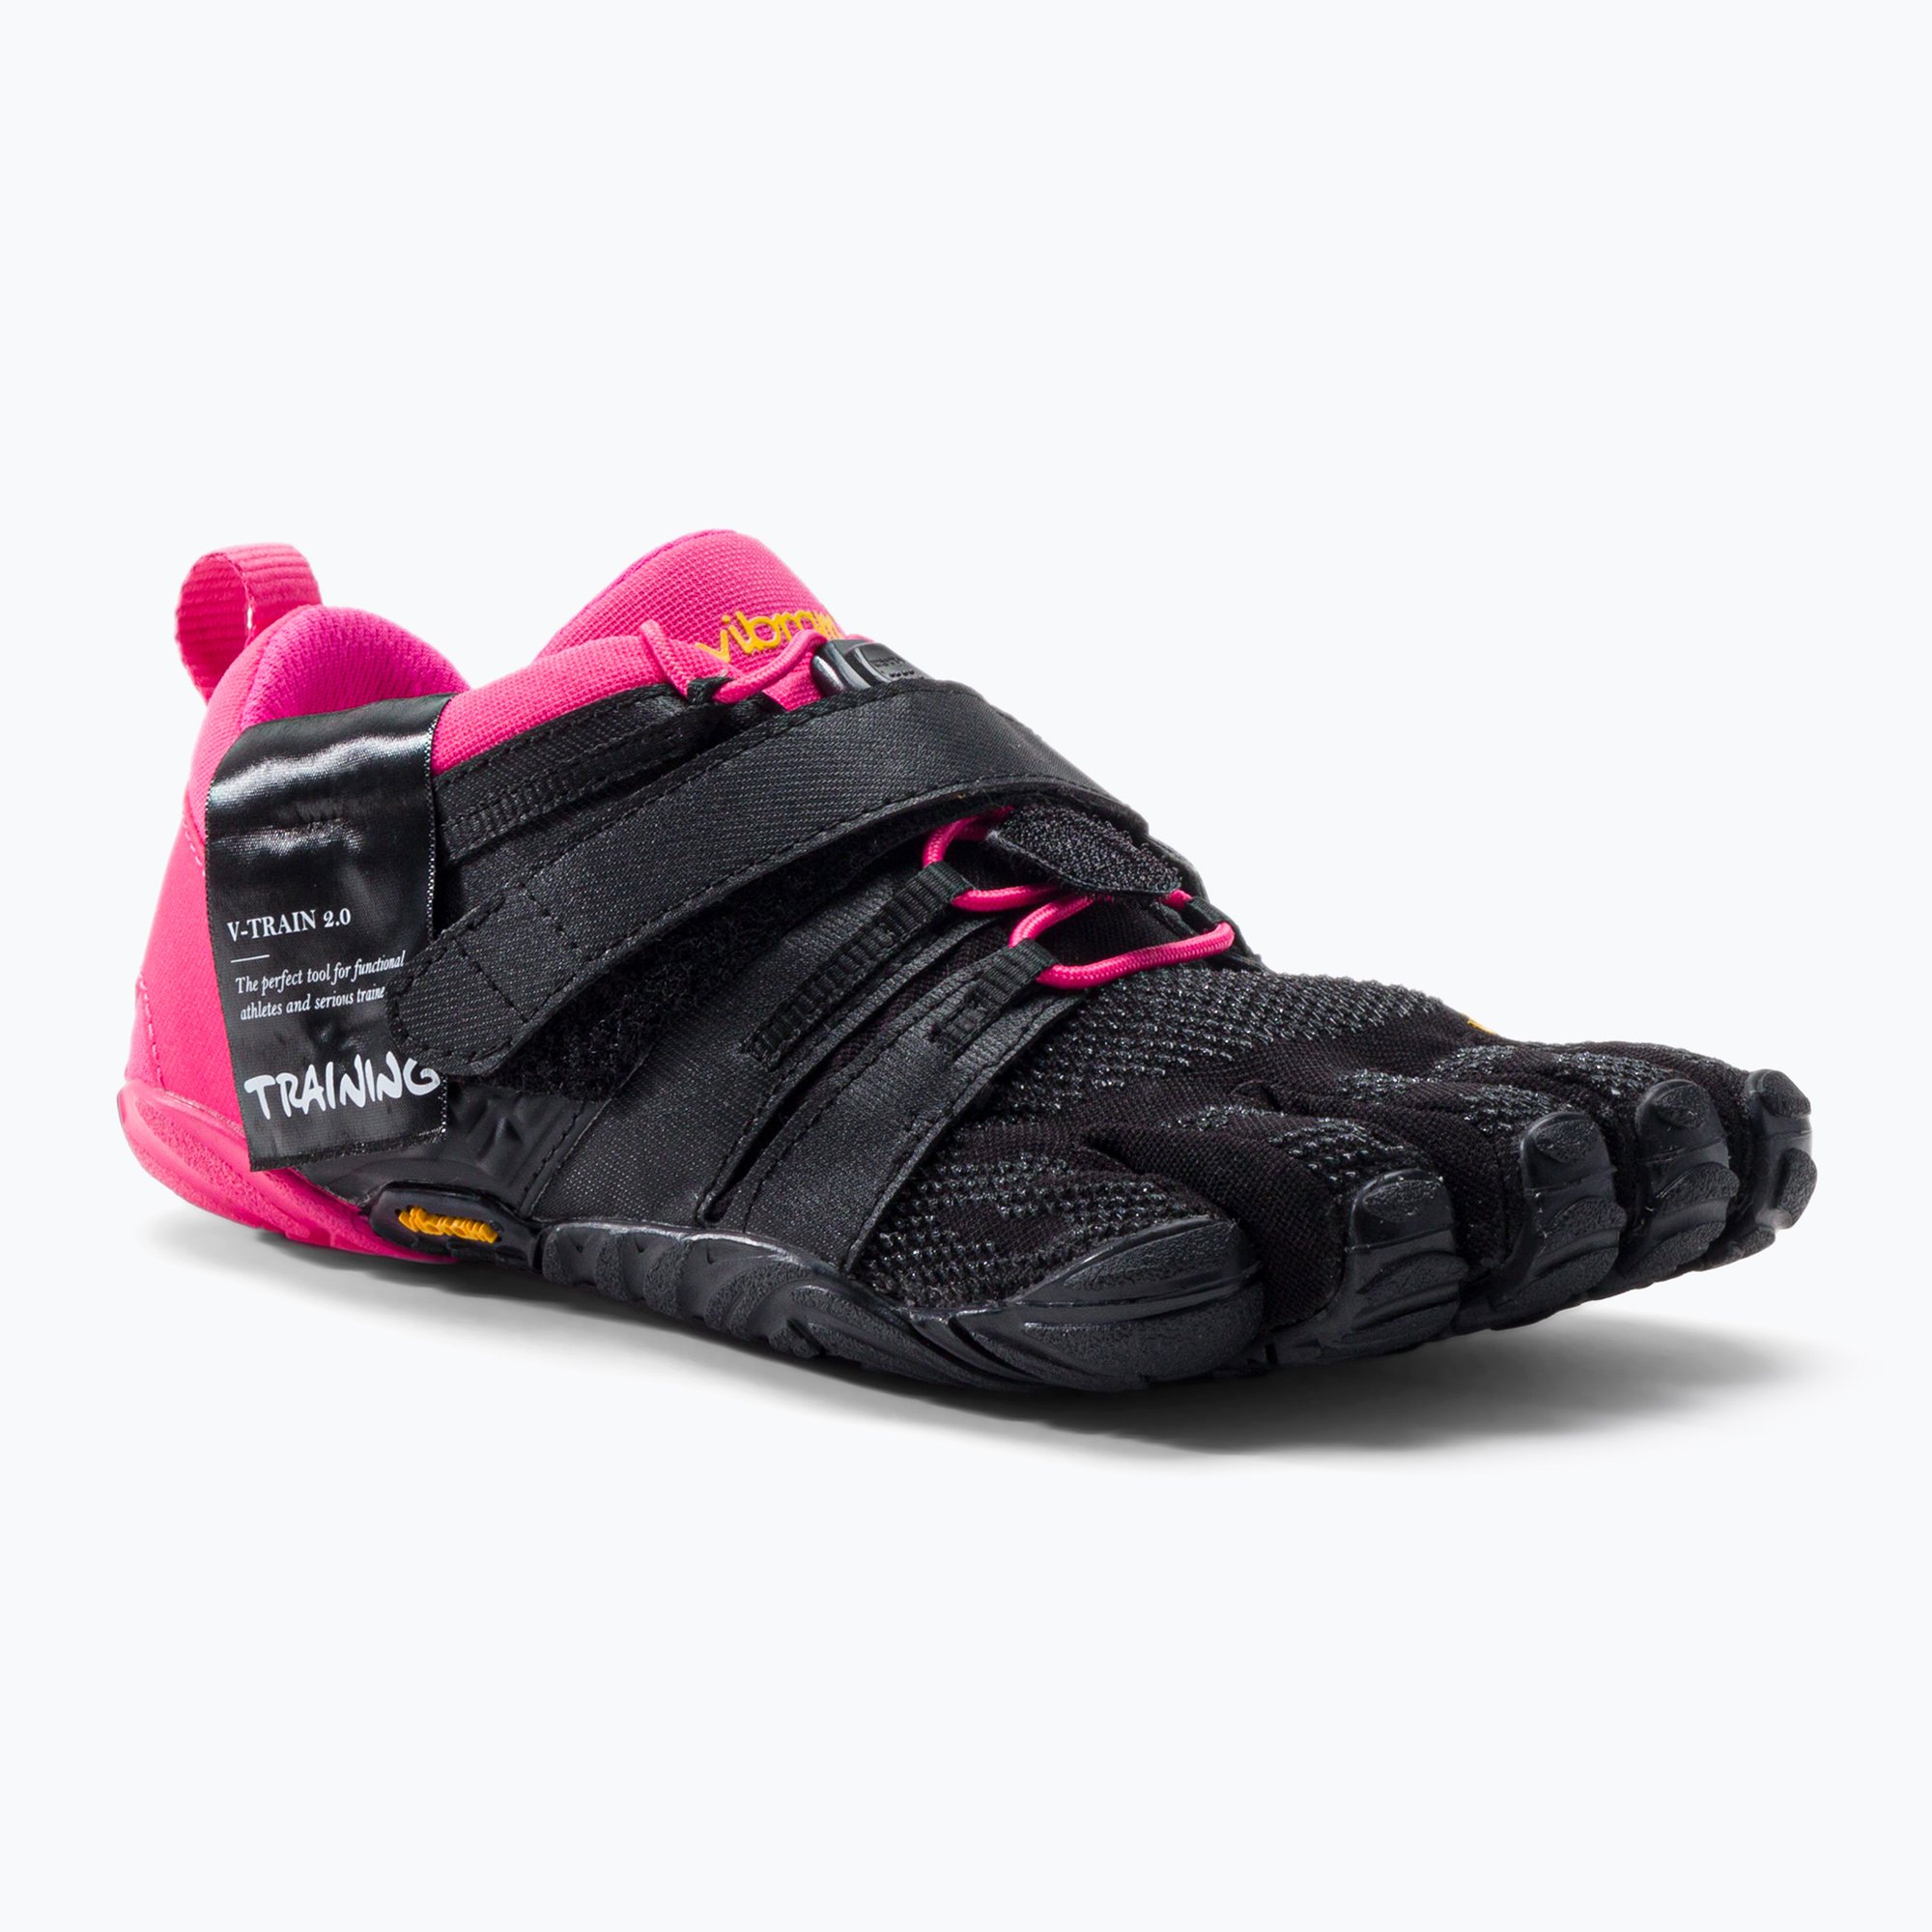 Дамски обувки за тренировка Vibram Fivefingers V-Train 2.0 black/pink 20W770336